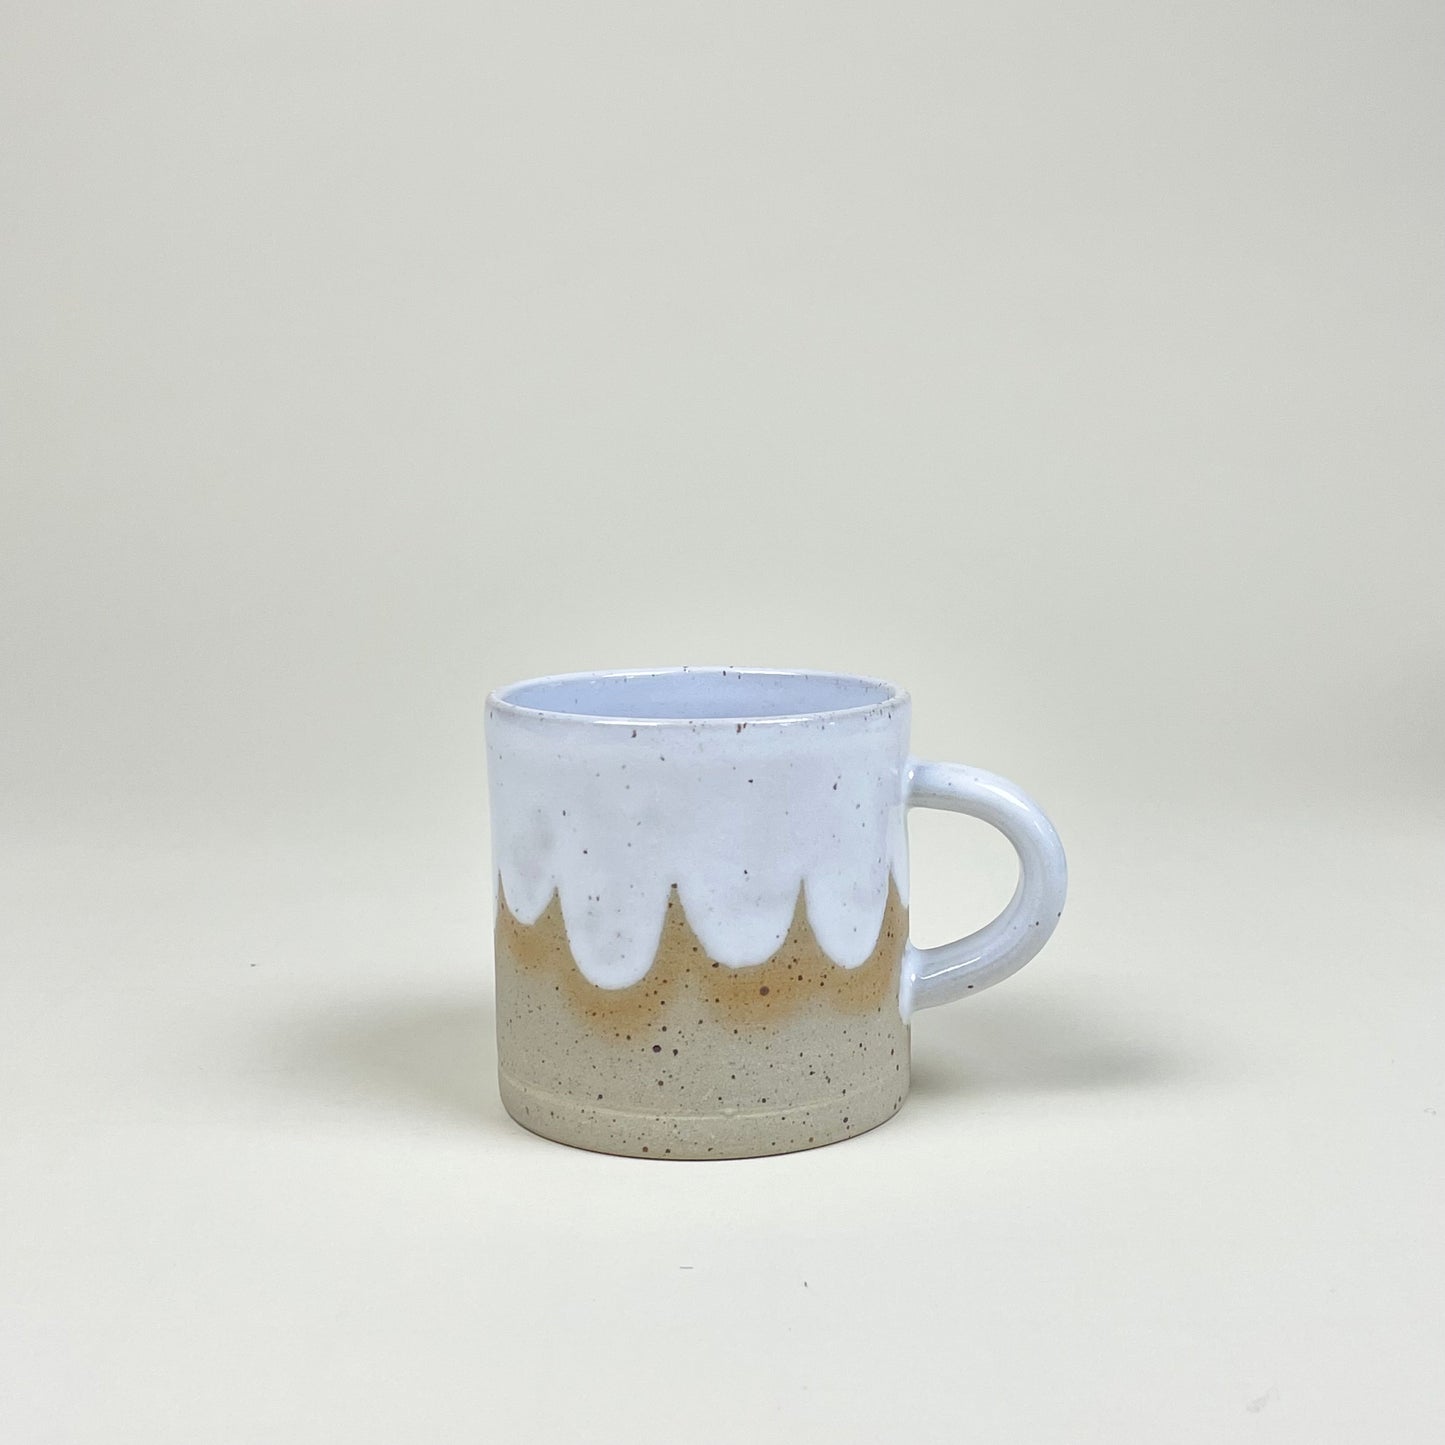 Foam Mug by Stina Lord